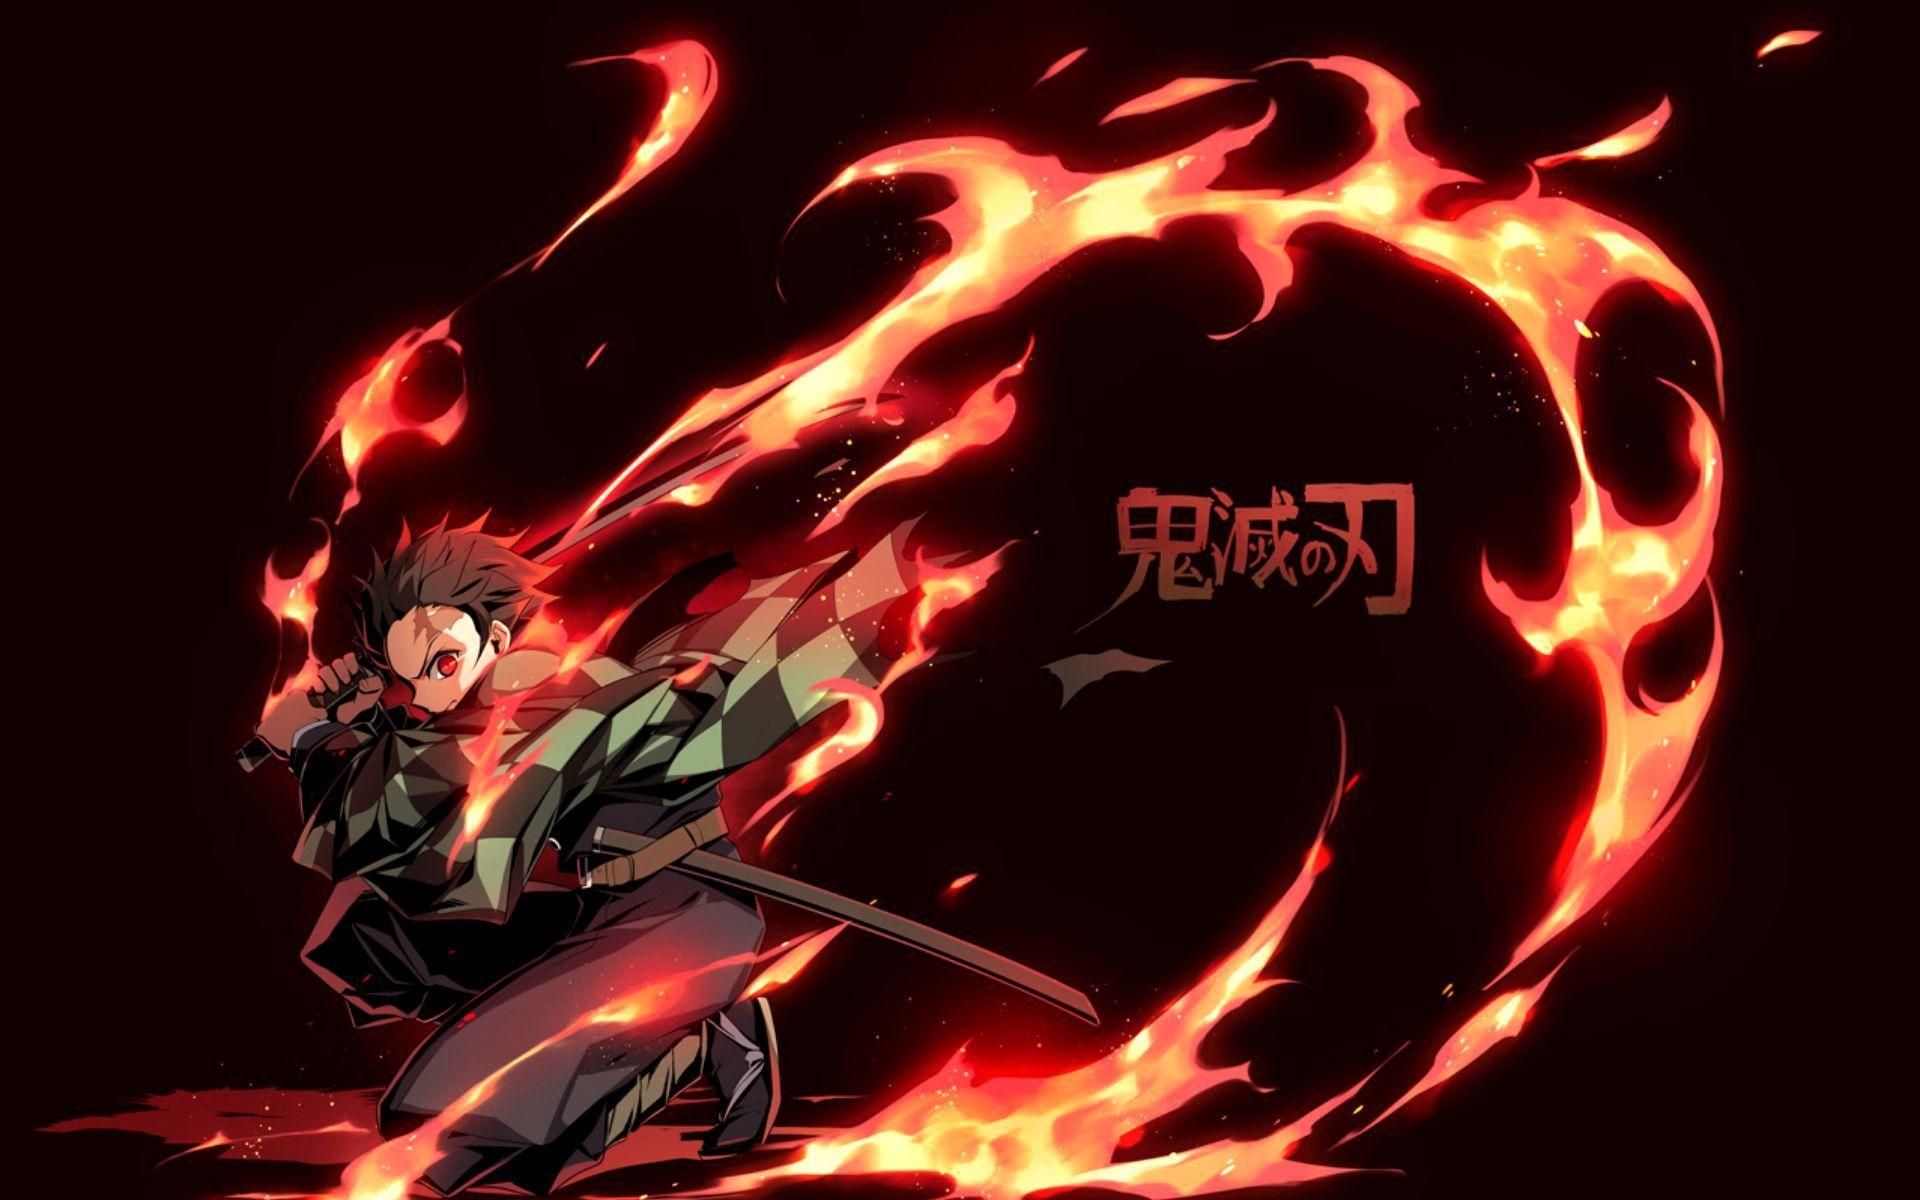 Demon Slayer Kimetsu no Yaiba Inosuke Hashibira Tanjirou Kamado Zenitsu  Agatsuma HD Anime Wallpapers  HD Wallpapers  ID 40563